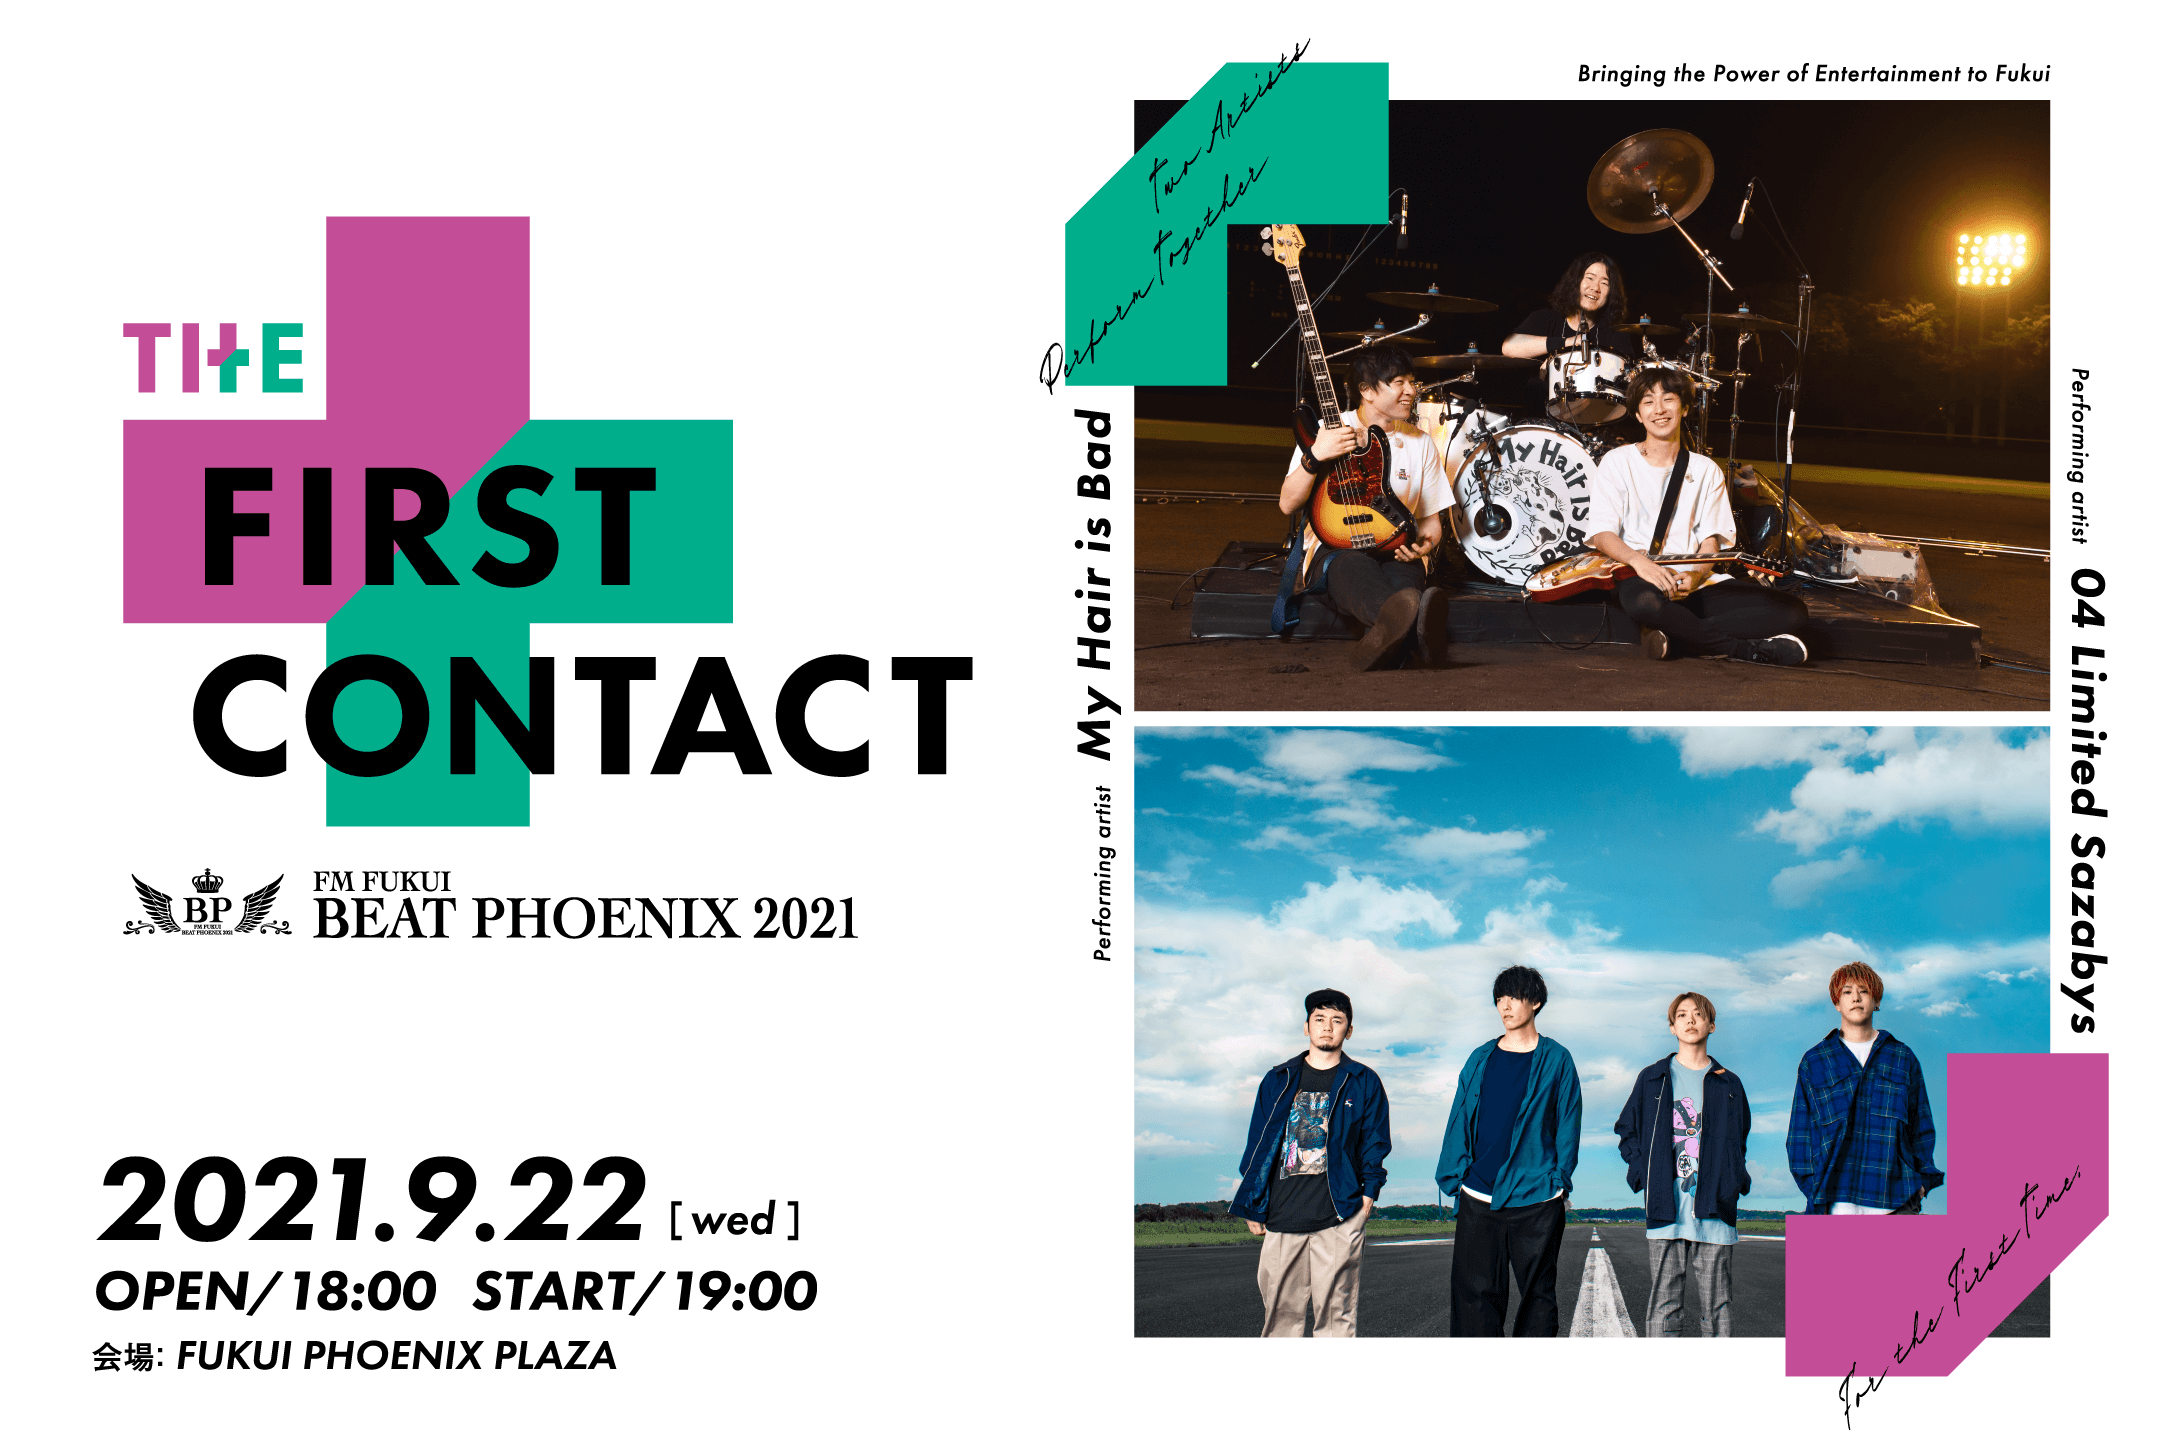 【福井】BEAT PHOENIX 2021 〜THE FIRST CONTACT〜 (福井フェニックスプラザ)